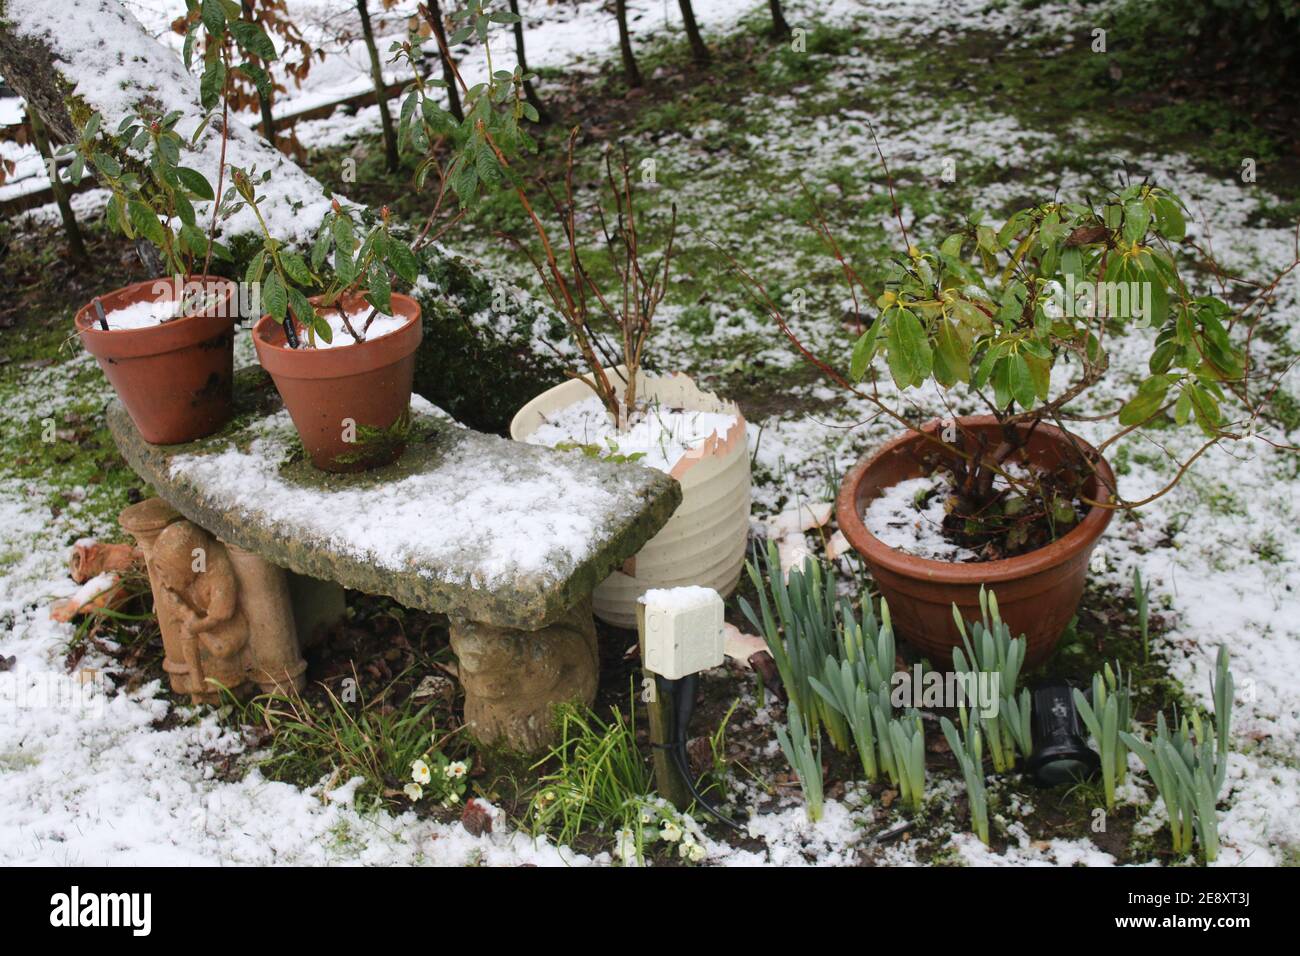 Schneeszene Landschaft von gefrorenen englischen Land Wintergarten mit Steinbank Sitz unter Apfelbaum und Pflanzentöpfe Frühling Birnen wächst Gras Rasen Stockfoto